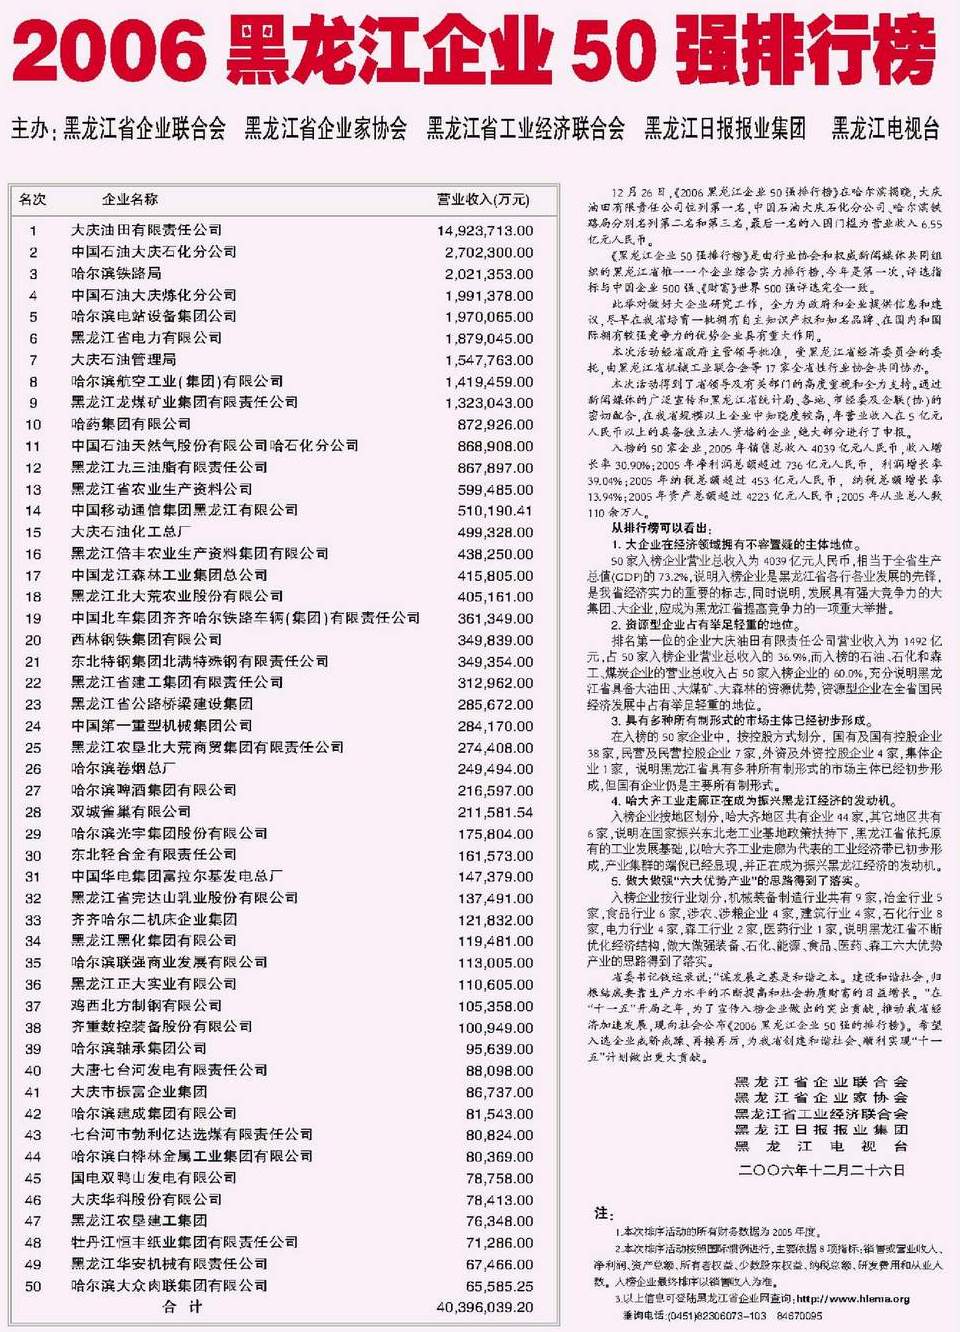 2006黑龙江企业50强排行榜